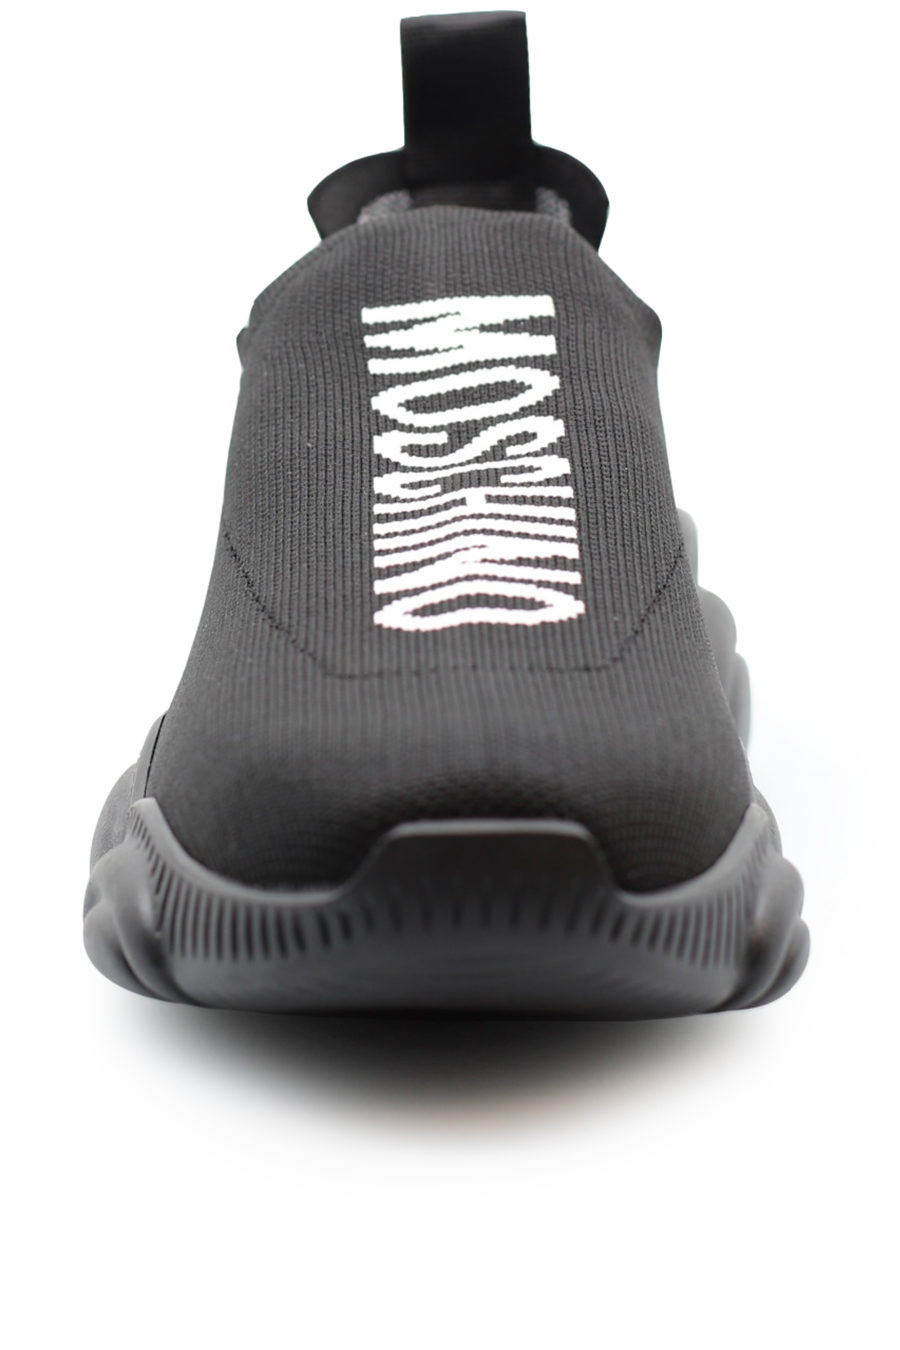 Zapatillas negras sin cordones con logo blanco - b388cb3d1e31ab3c815f68ee1928f5a1972c6e72